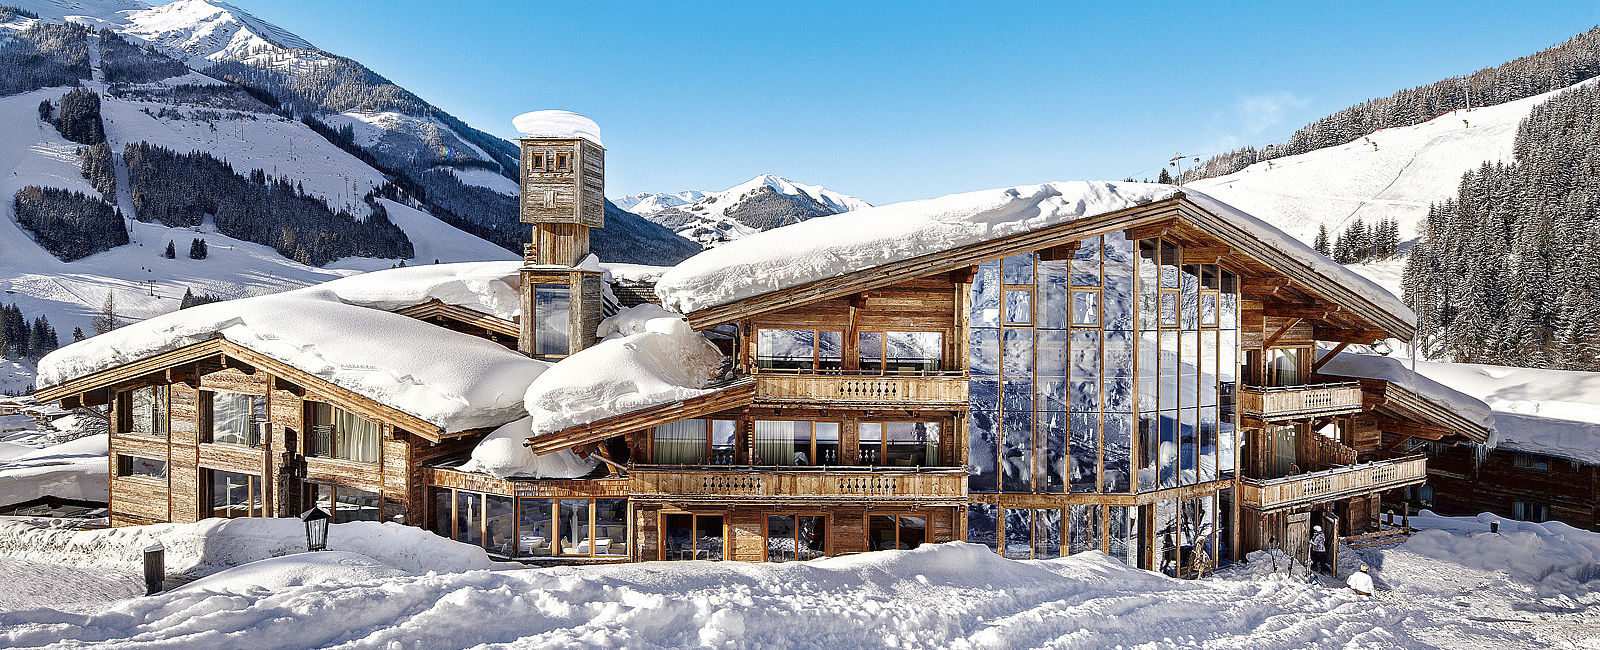 VERY SPECIAL HOTEL
 Art & Ski-In Hotel Hinterhag 
 Fantastische Gemütlichkeit 